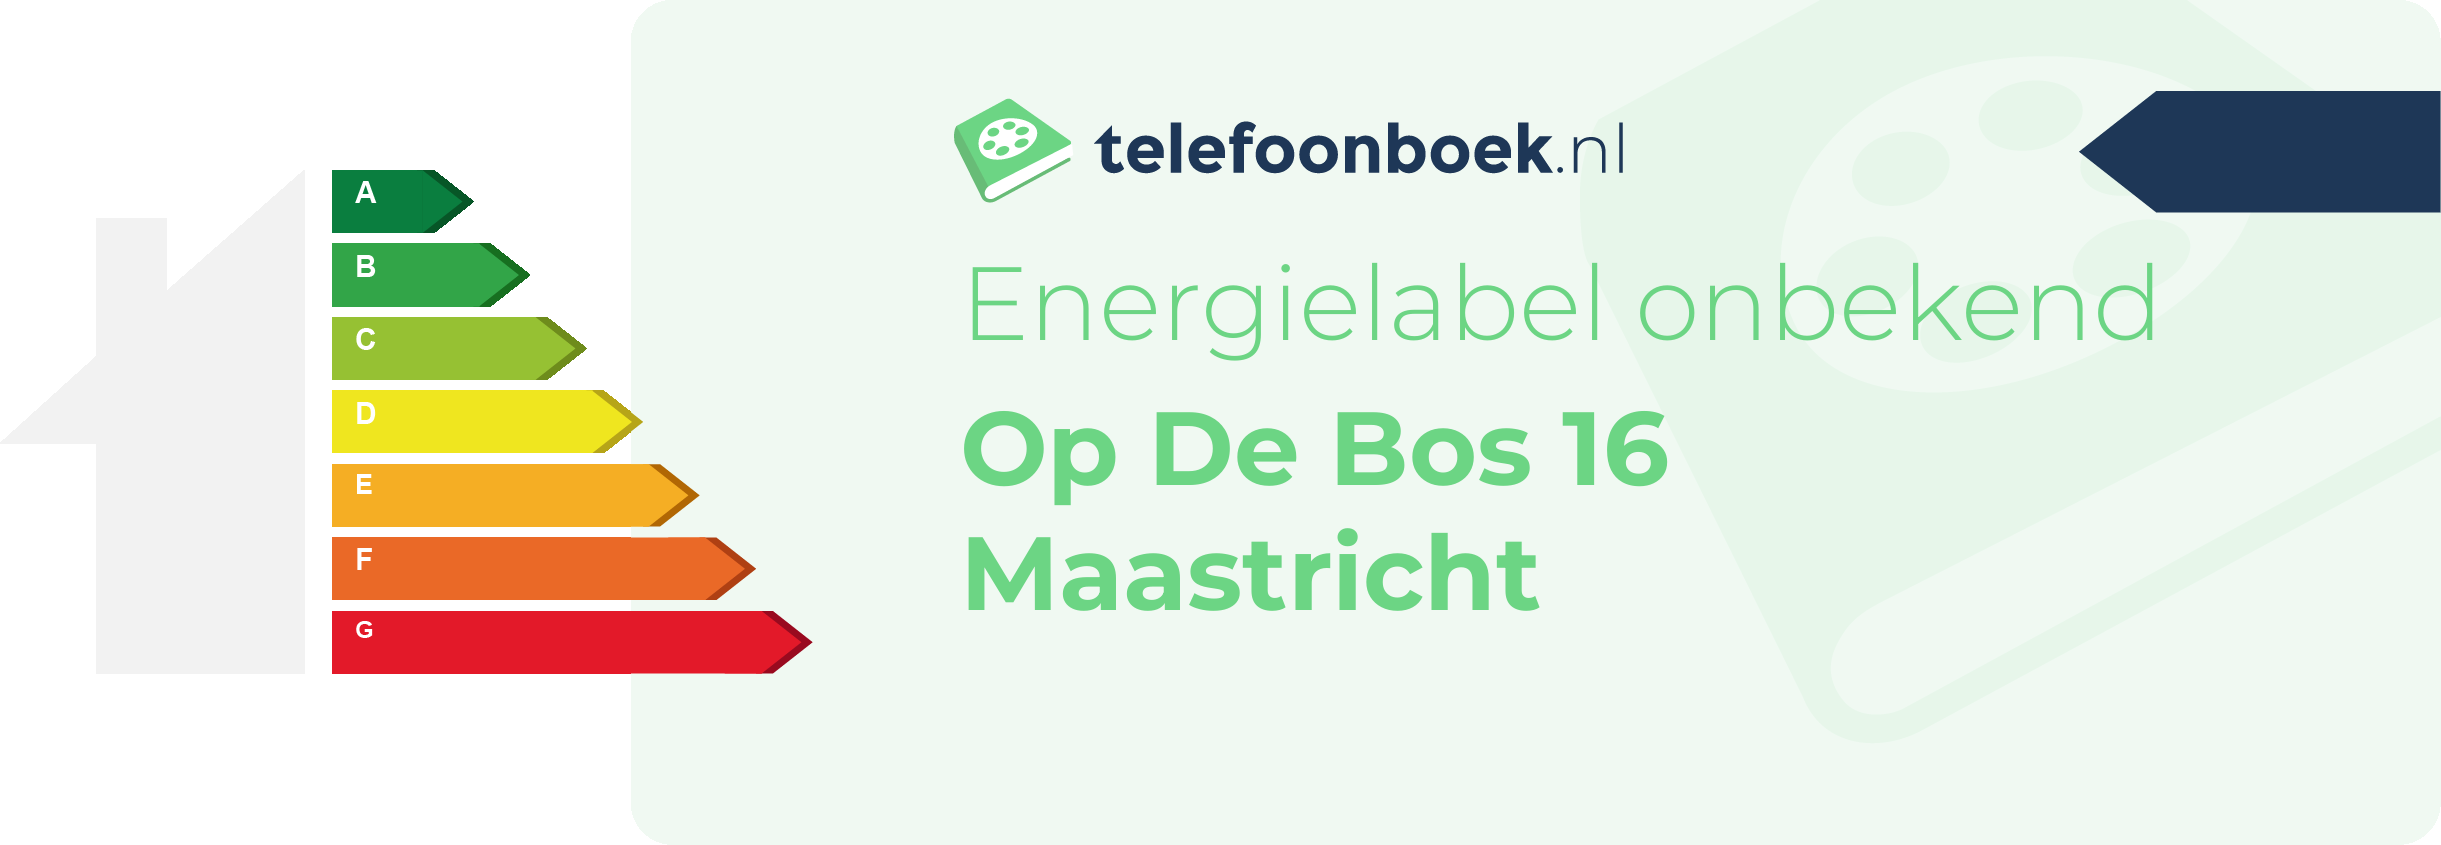 Energielabel Op De Bos 16 Maastricht